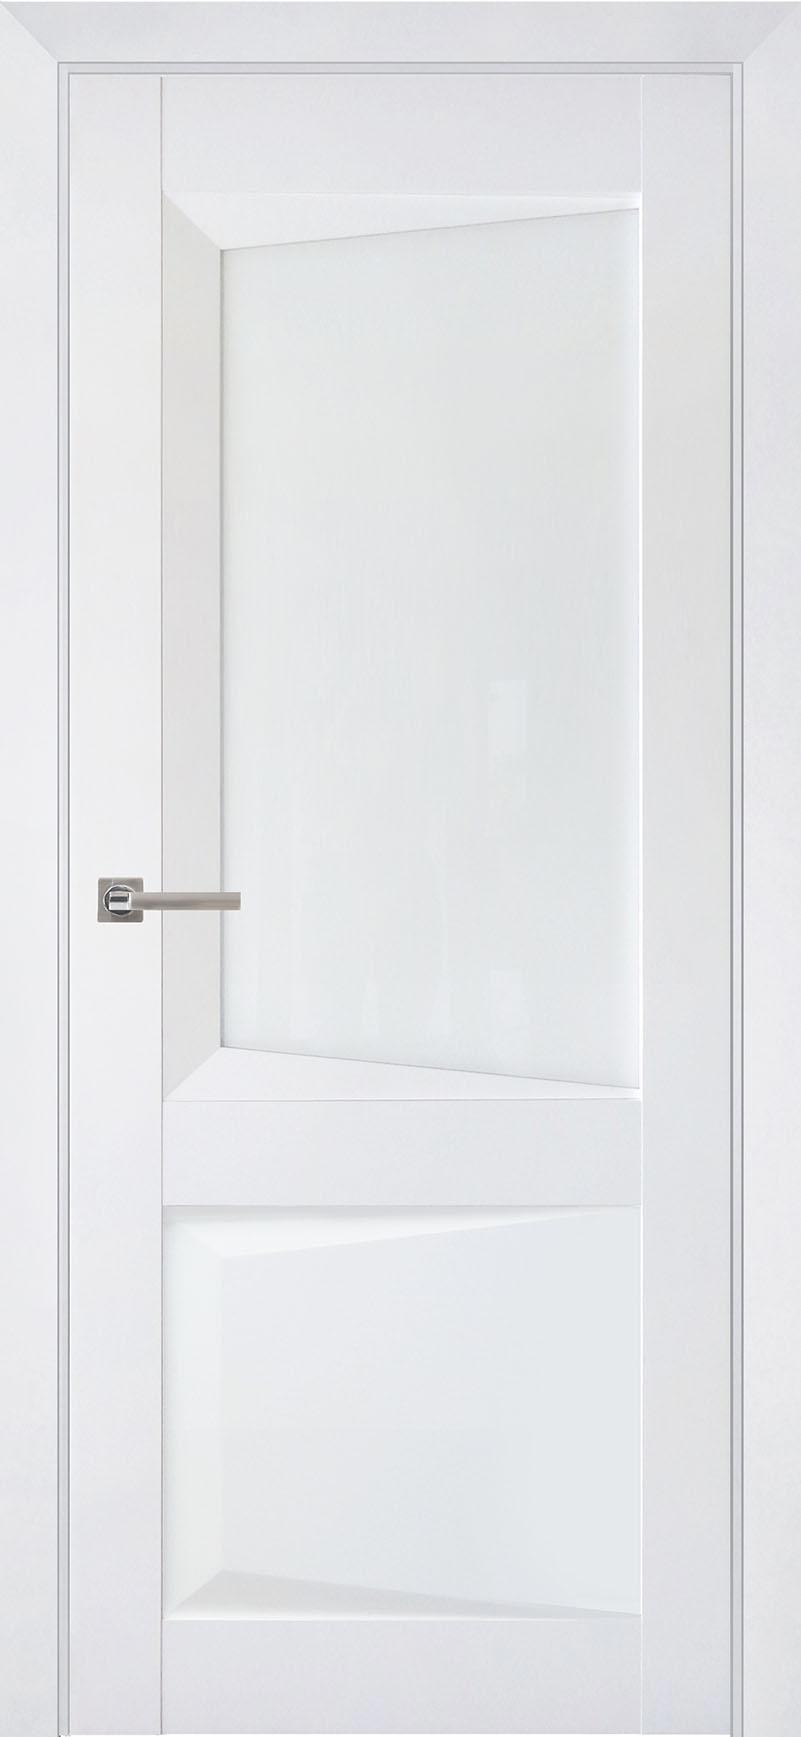 90903220 Межкомнатная дверь Перфекто 108 остеклённая без замка и петель в комплекте 200x60см белый STLM-0420046 UBERTURE